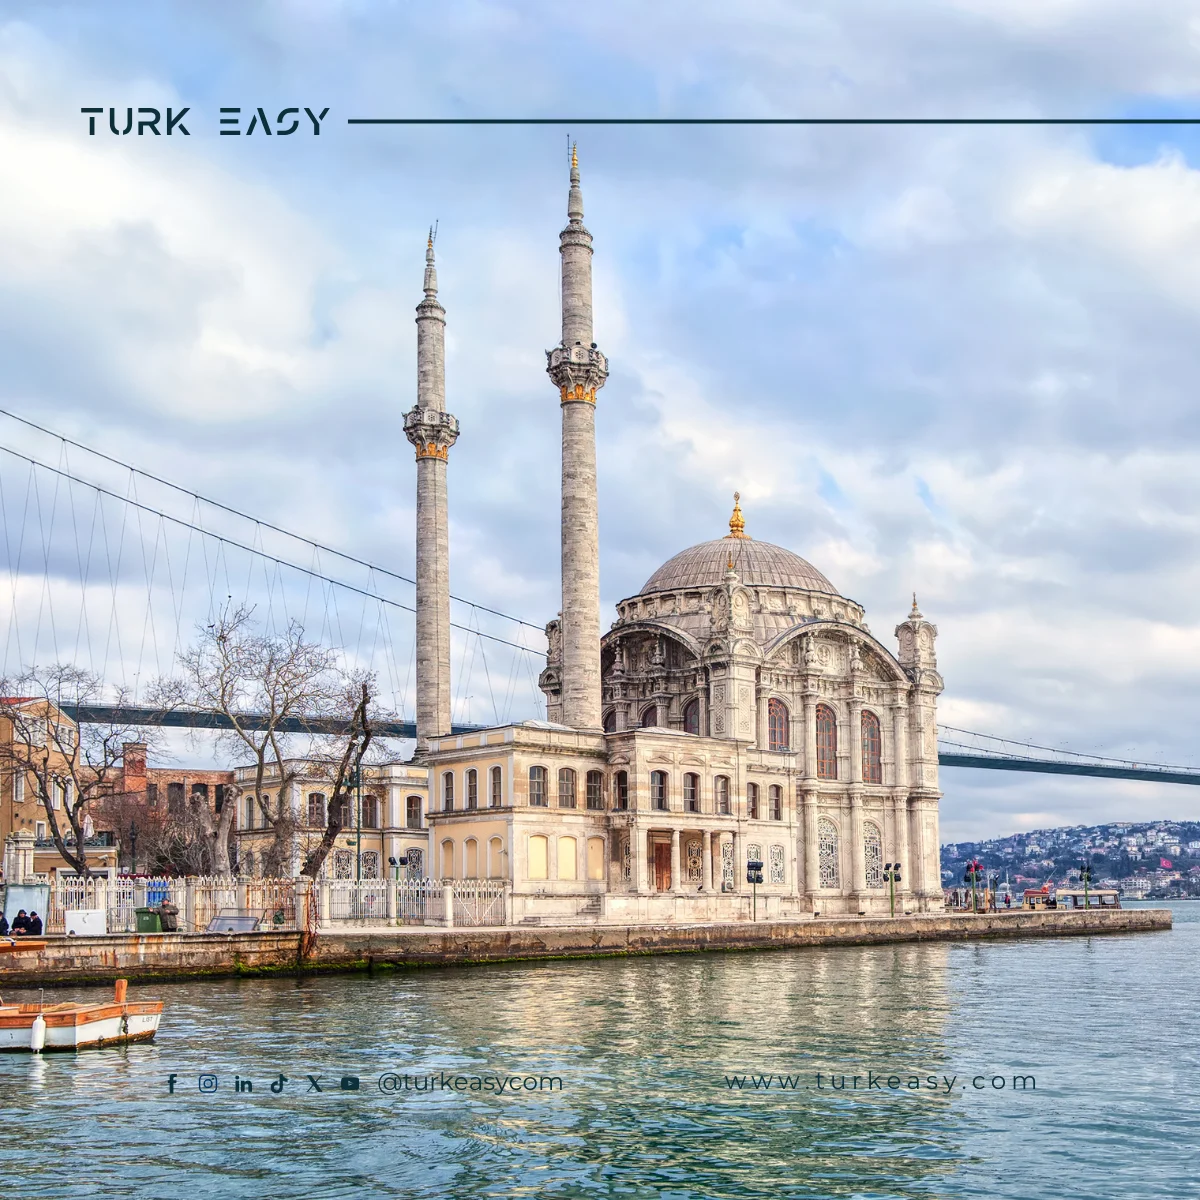 Türkiye'deki Turizmin Avantajları ve En İyi Turlar - Turk Easy